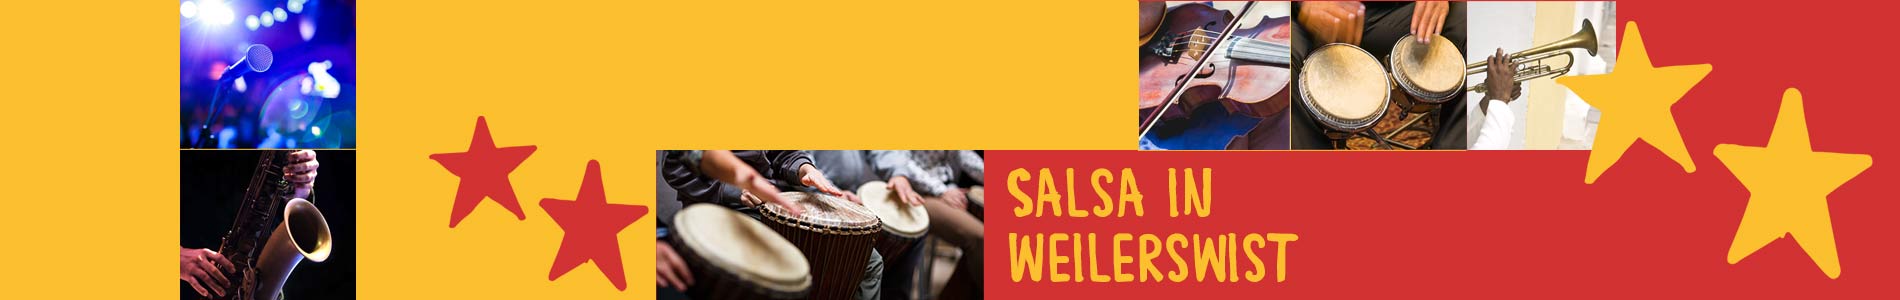 Salsa in Weilerswist – Salsa lernen und tanzen, Tanzkurse, Partys, Veranstaltungen